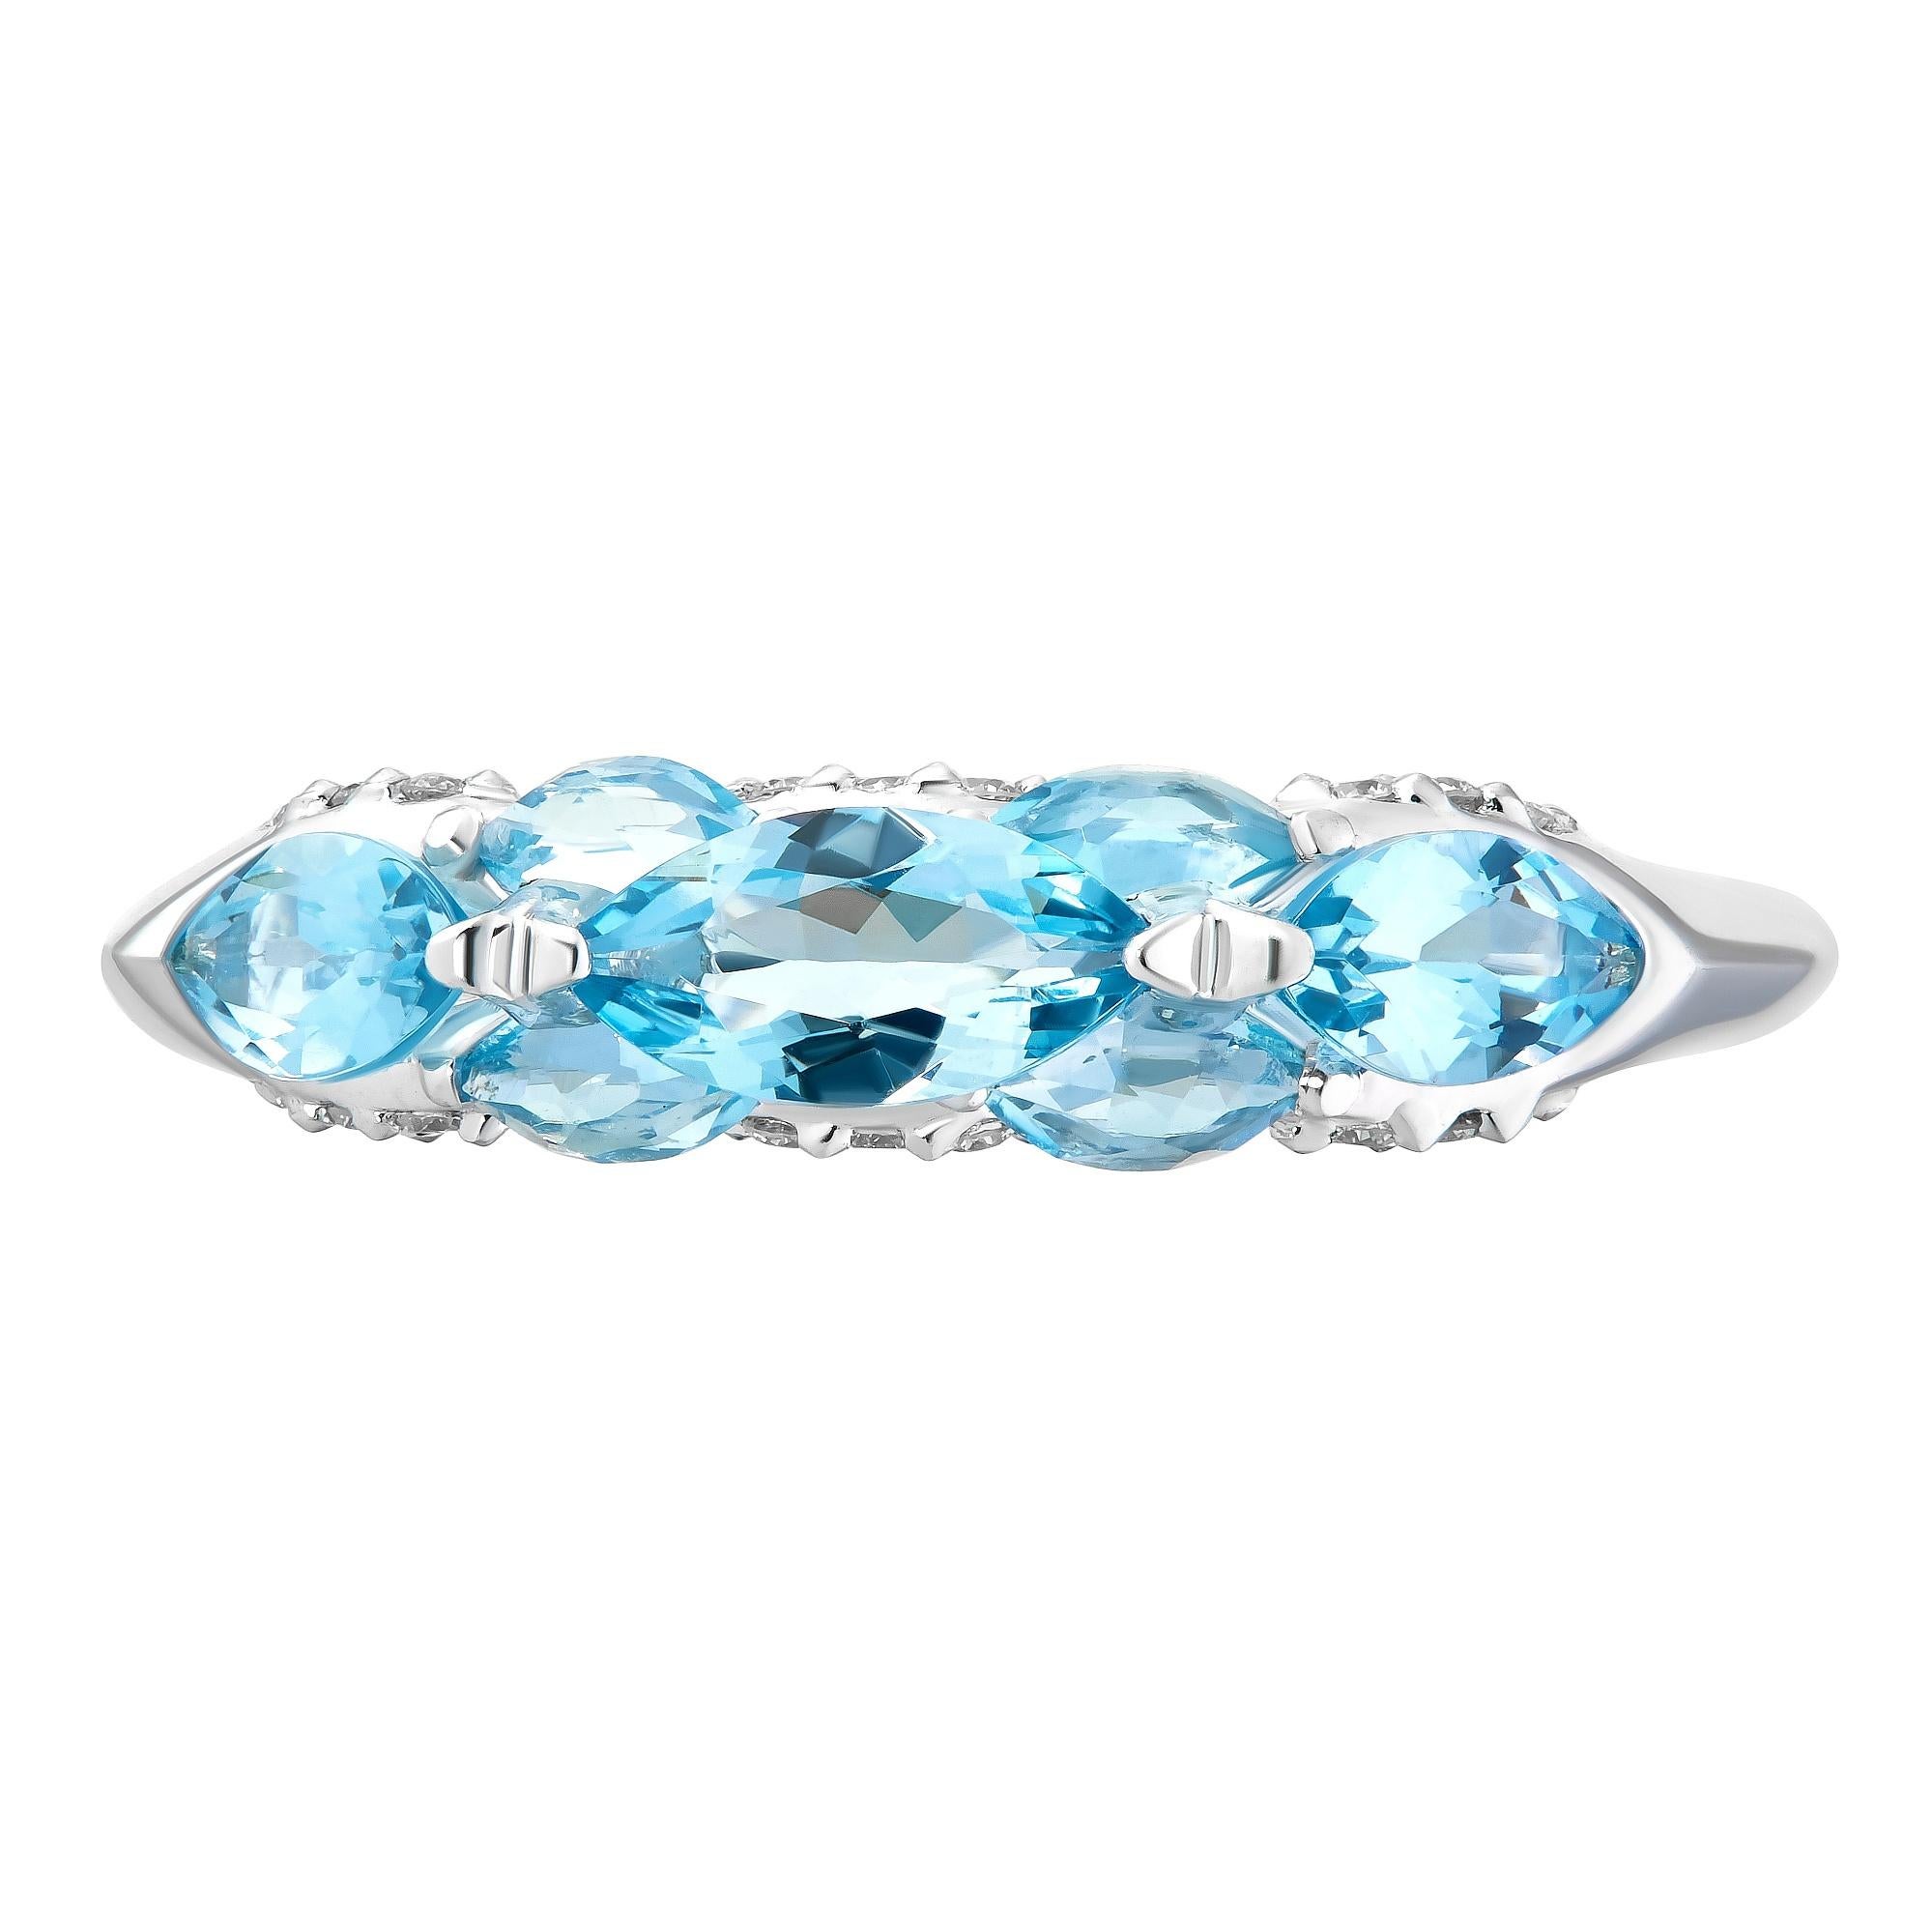 Der exquisite Ring aus der Harmony Collection'S von MOISEIKIN ist aus Santa Maria Aquamarinen und schimmernden Diamanten gefertigt.
Die leichte Harmonie von Aquamarinen in traditionellen und einzigartigen Umkehrfassungen erzeugt eine intensive